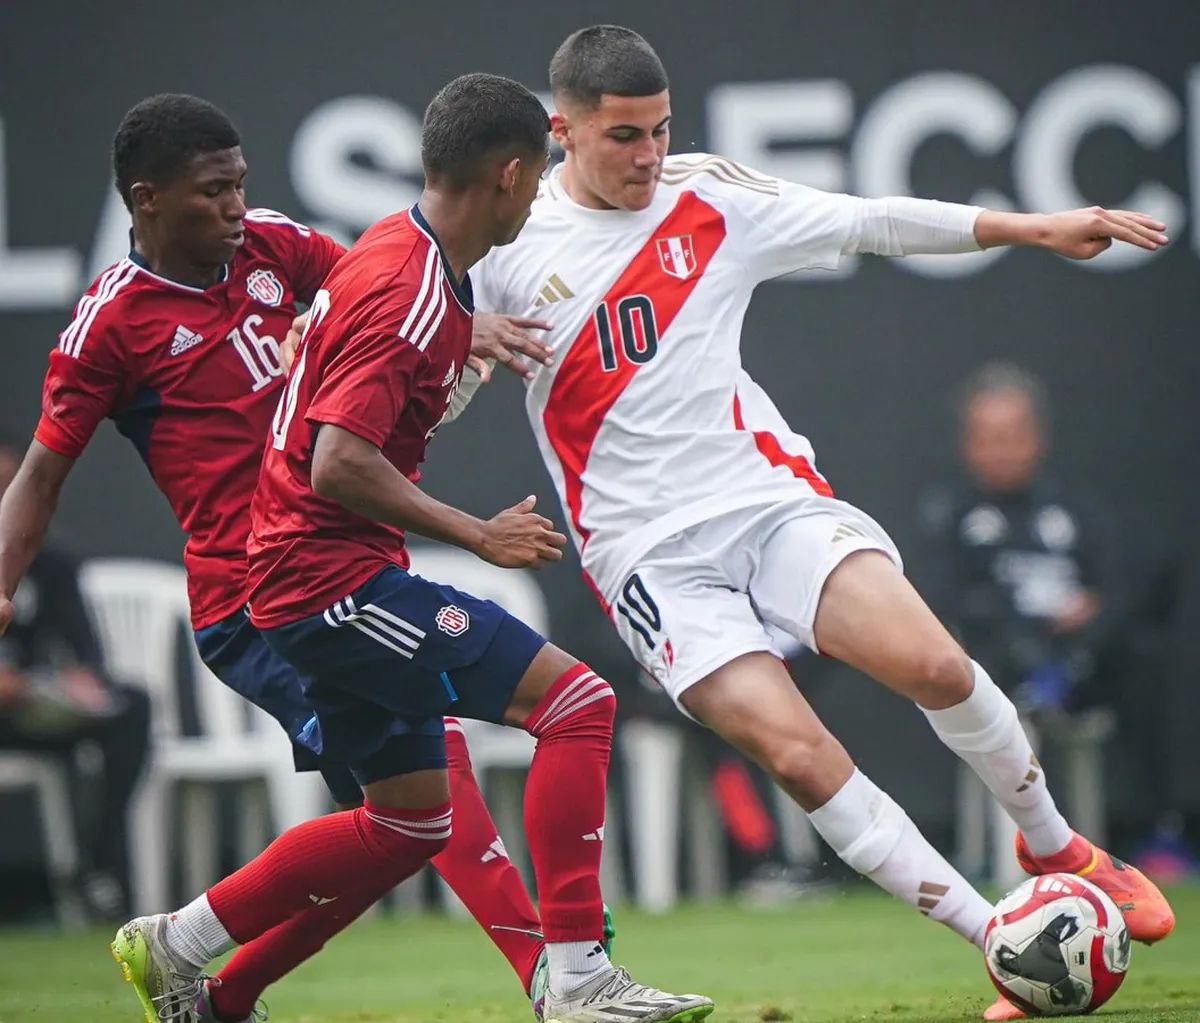 La Selección Peruana Sub-20 venció a su similar de Costa Rica en partido de preparación para el sudamericano